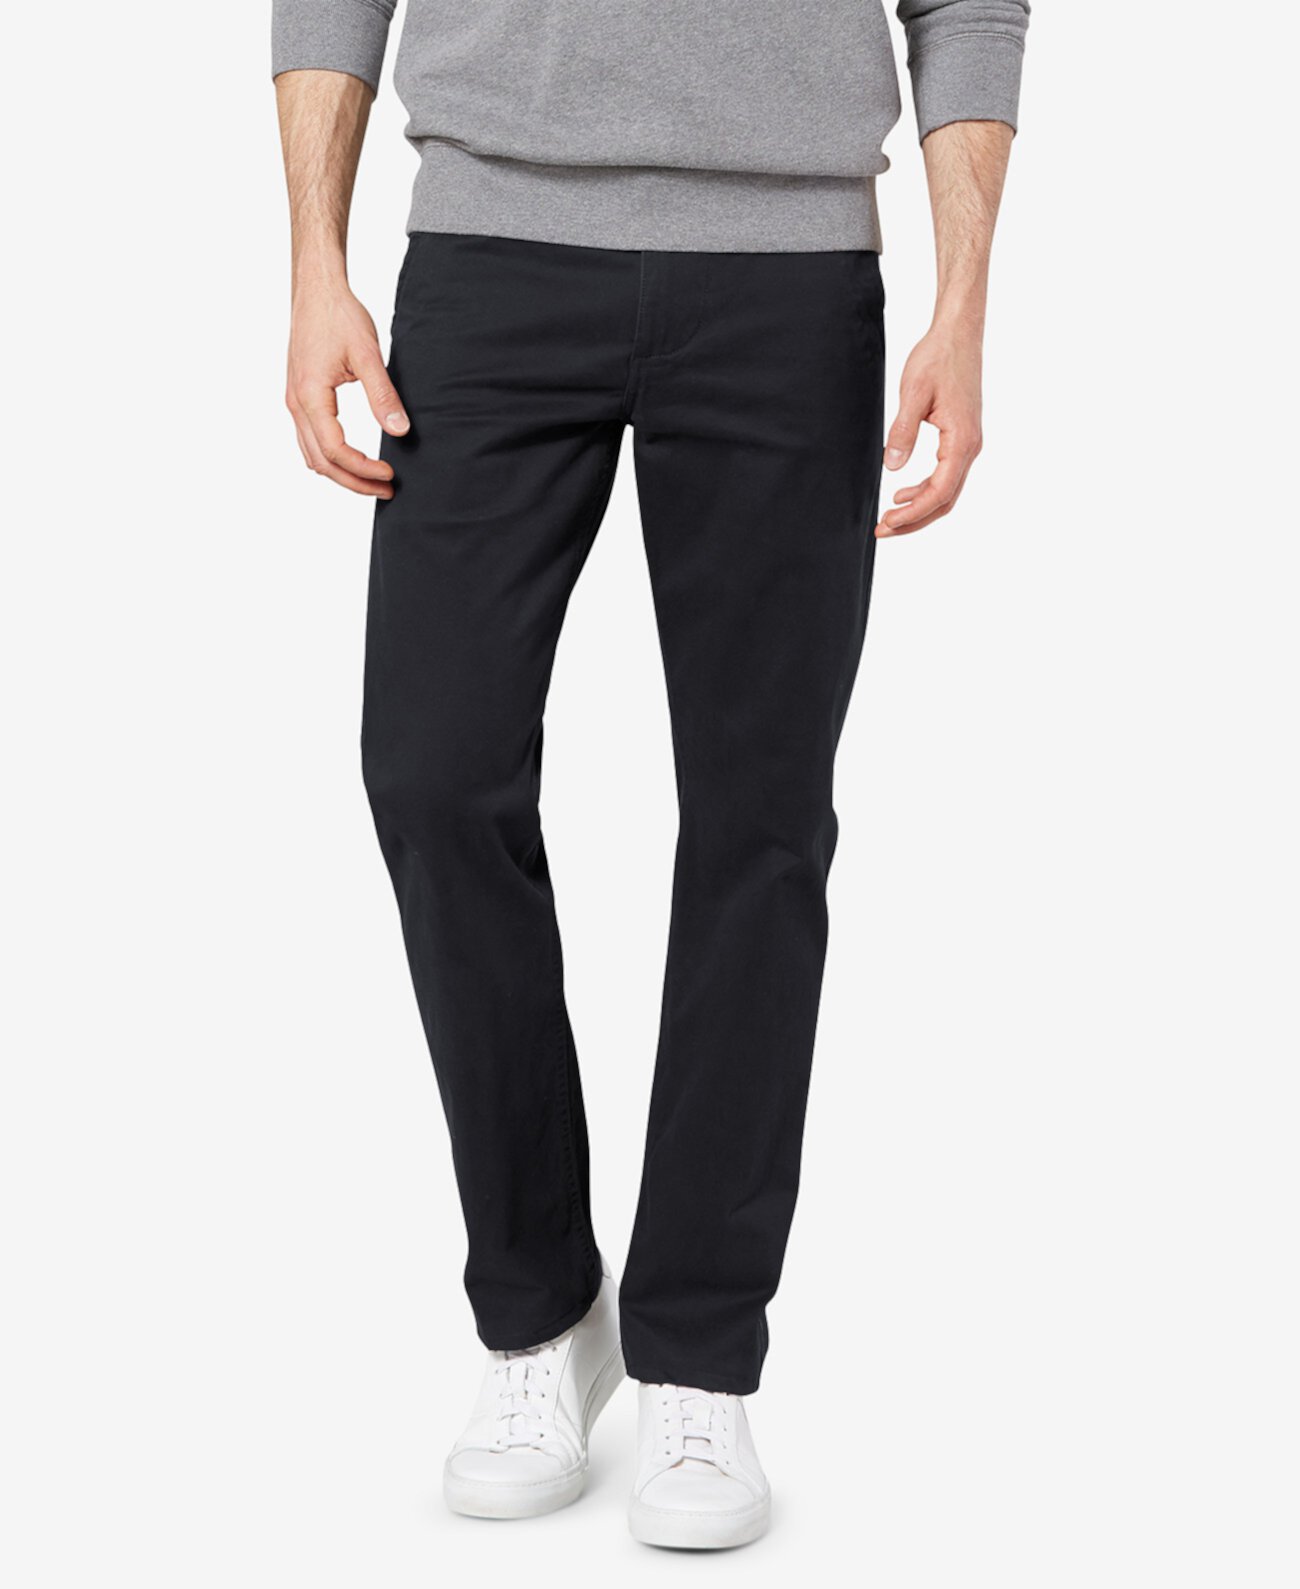 Мужские эластичные брюки Alpha Slim Fit All Seasons Tech цвета хаки Dockers